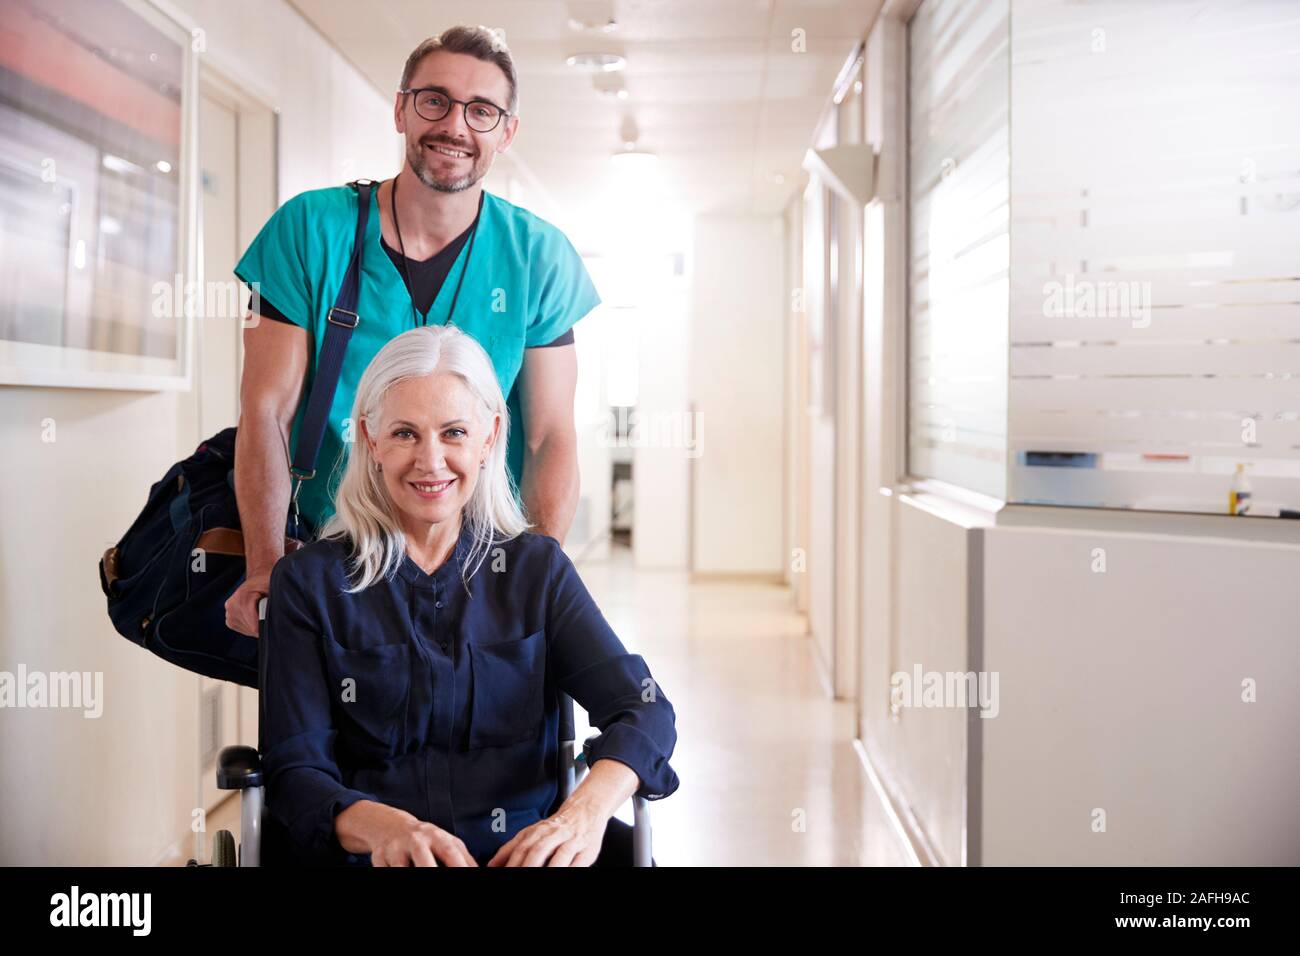 Senior masculino empujando ordenada paciente de sexo femenino, siendo dados de alta del hospital en silla de ruedas Foto de stock